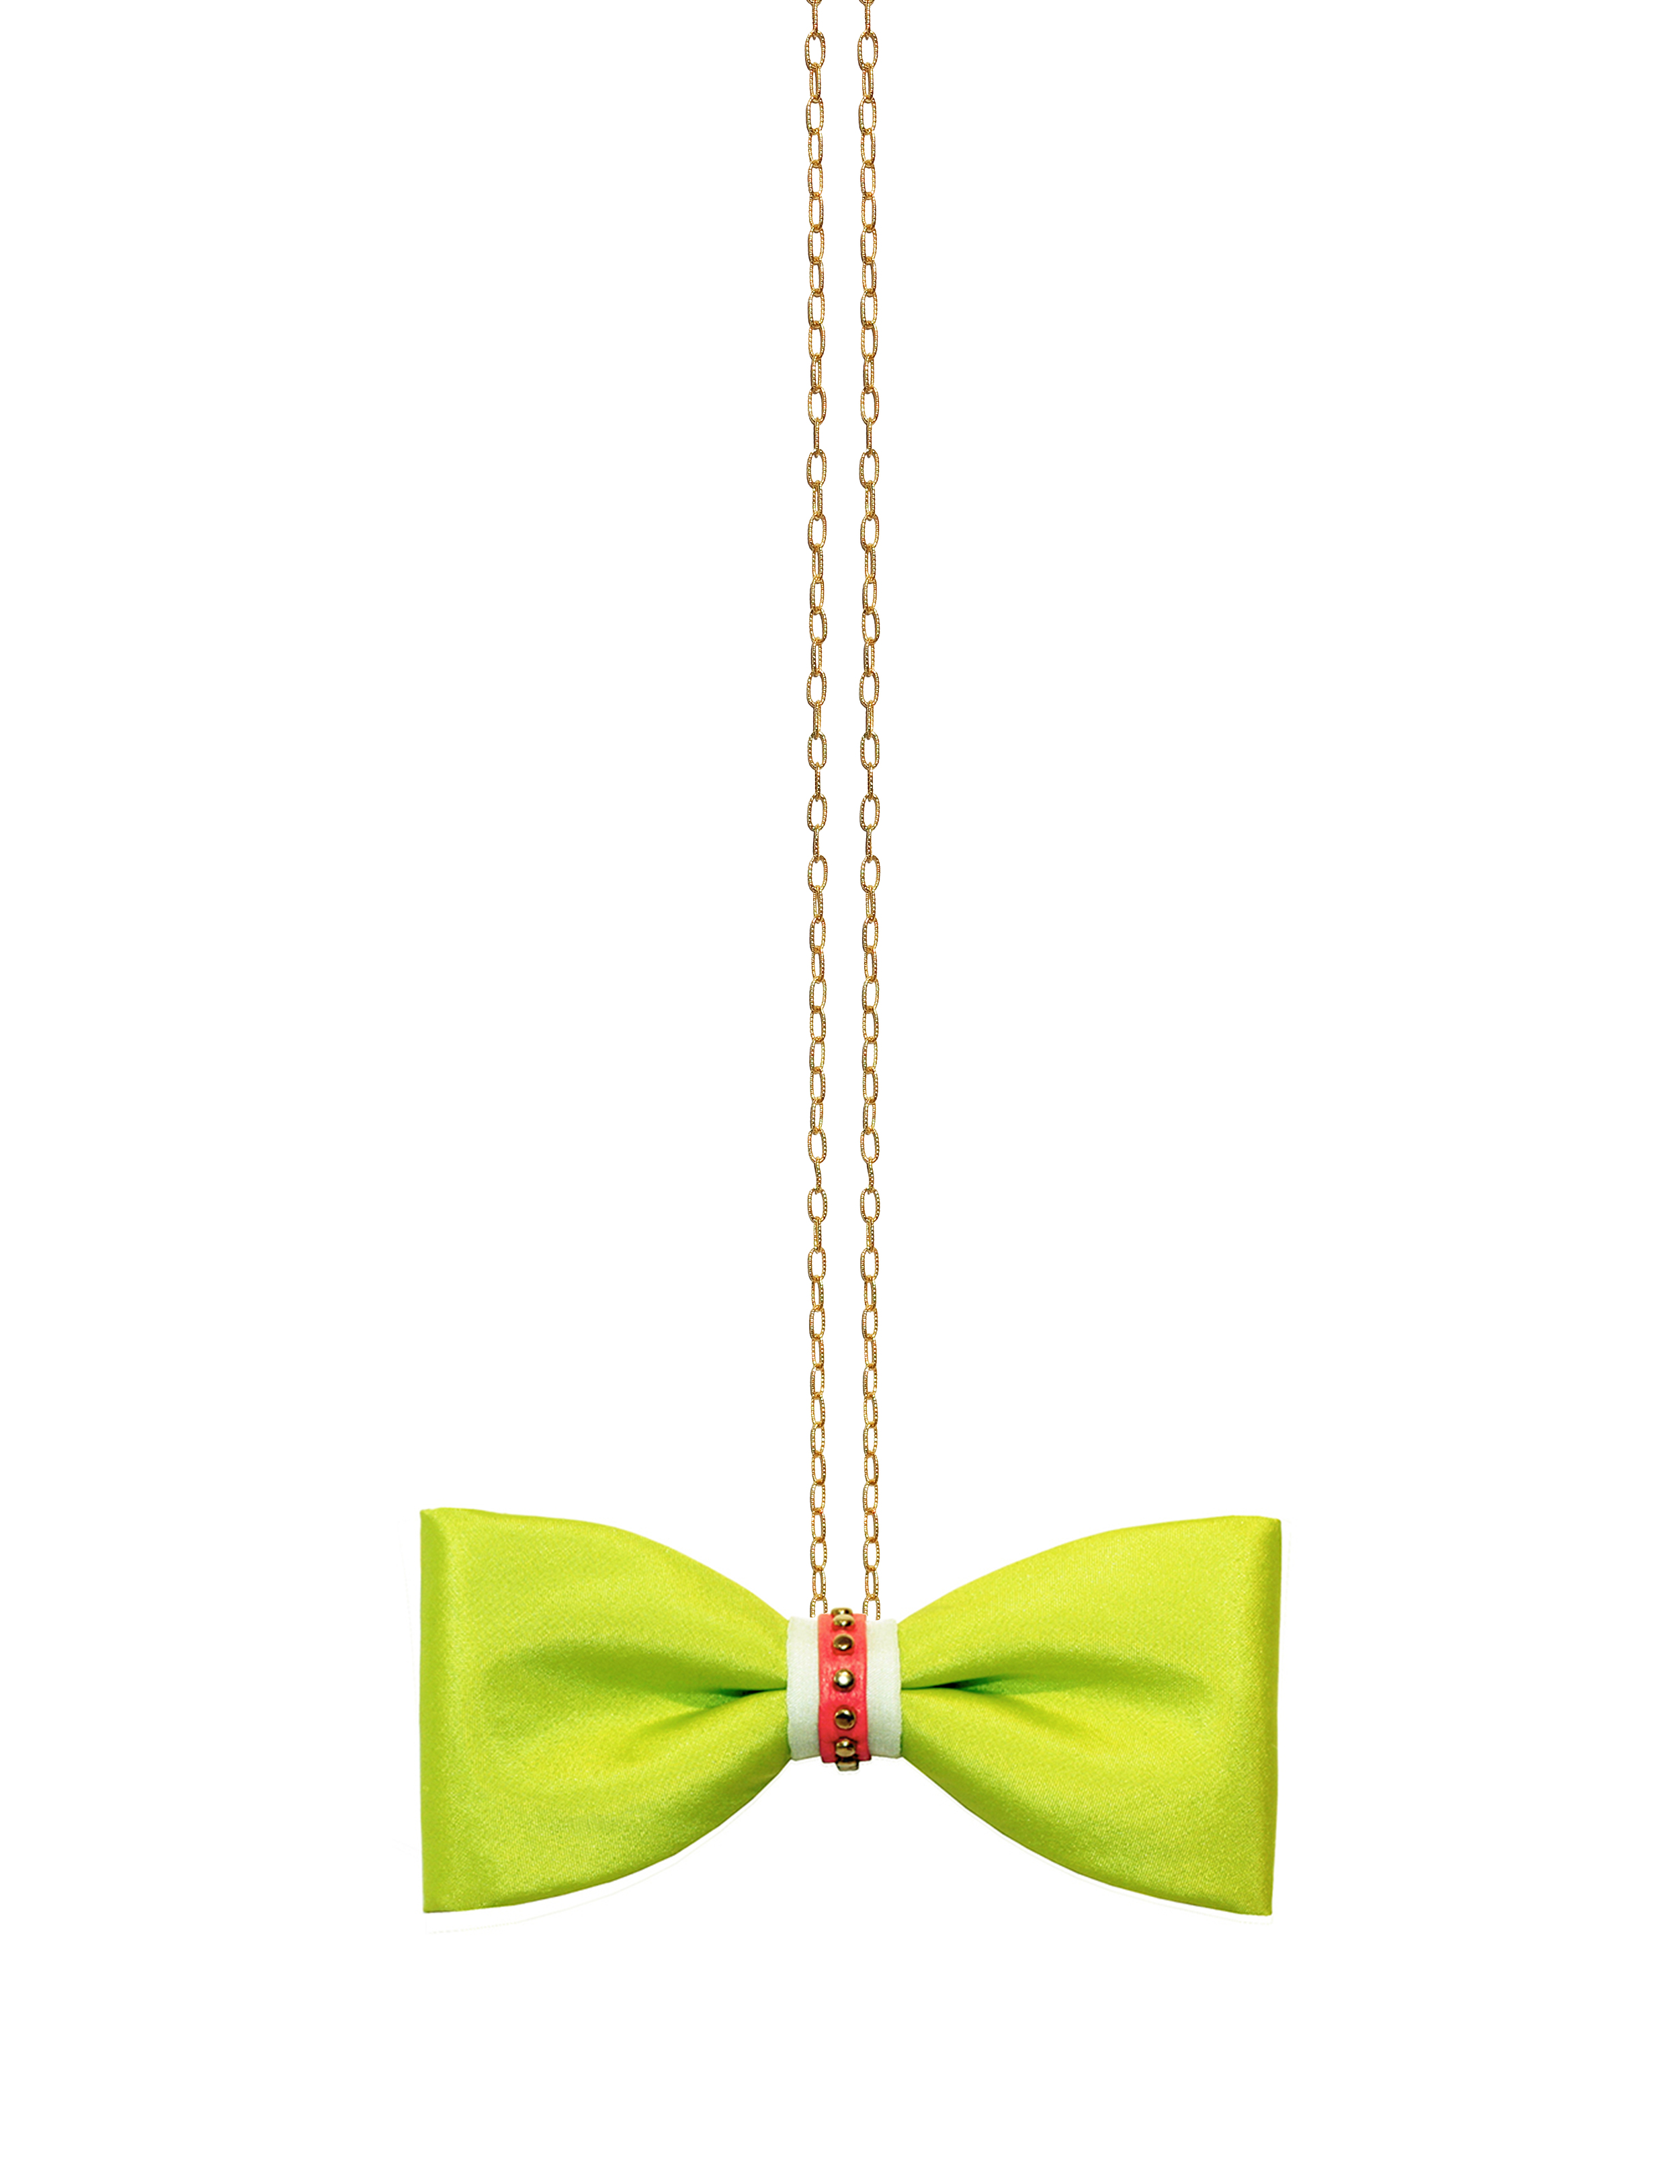 ZuZu Kim Green bow tie with chain  (1).jpg